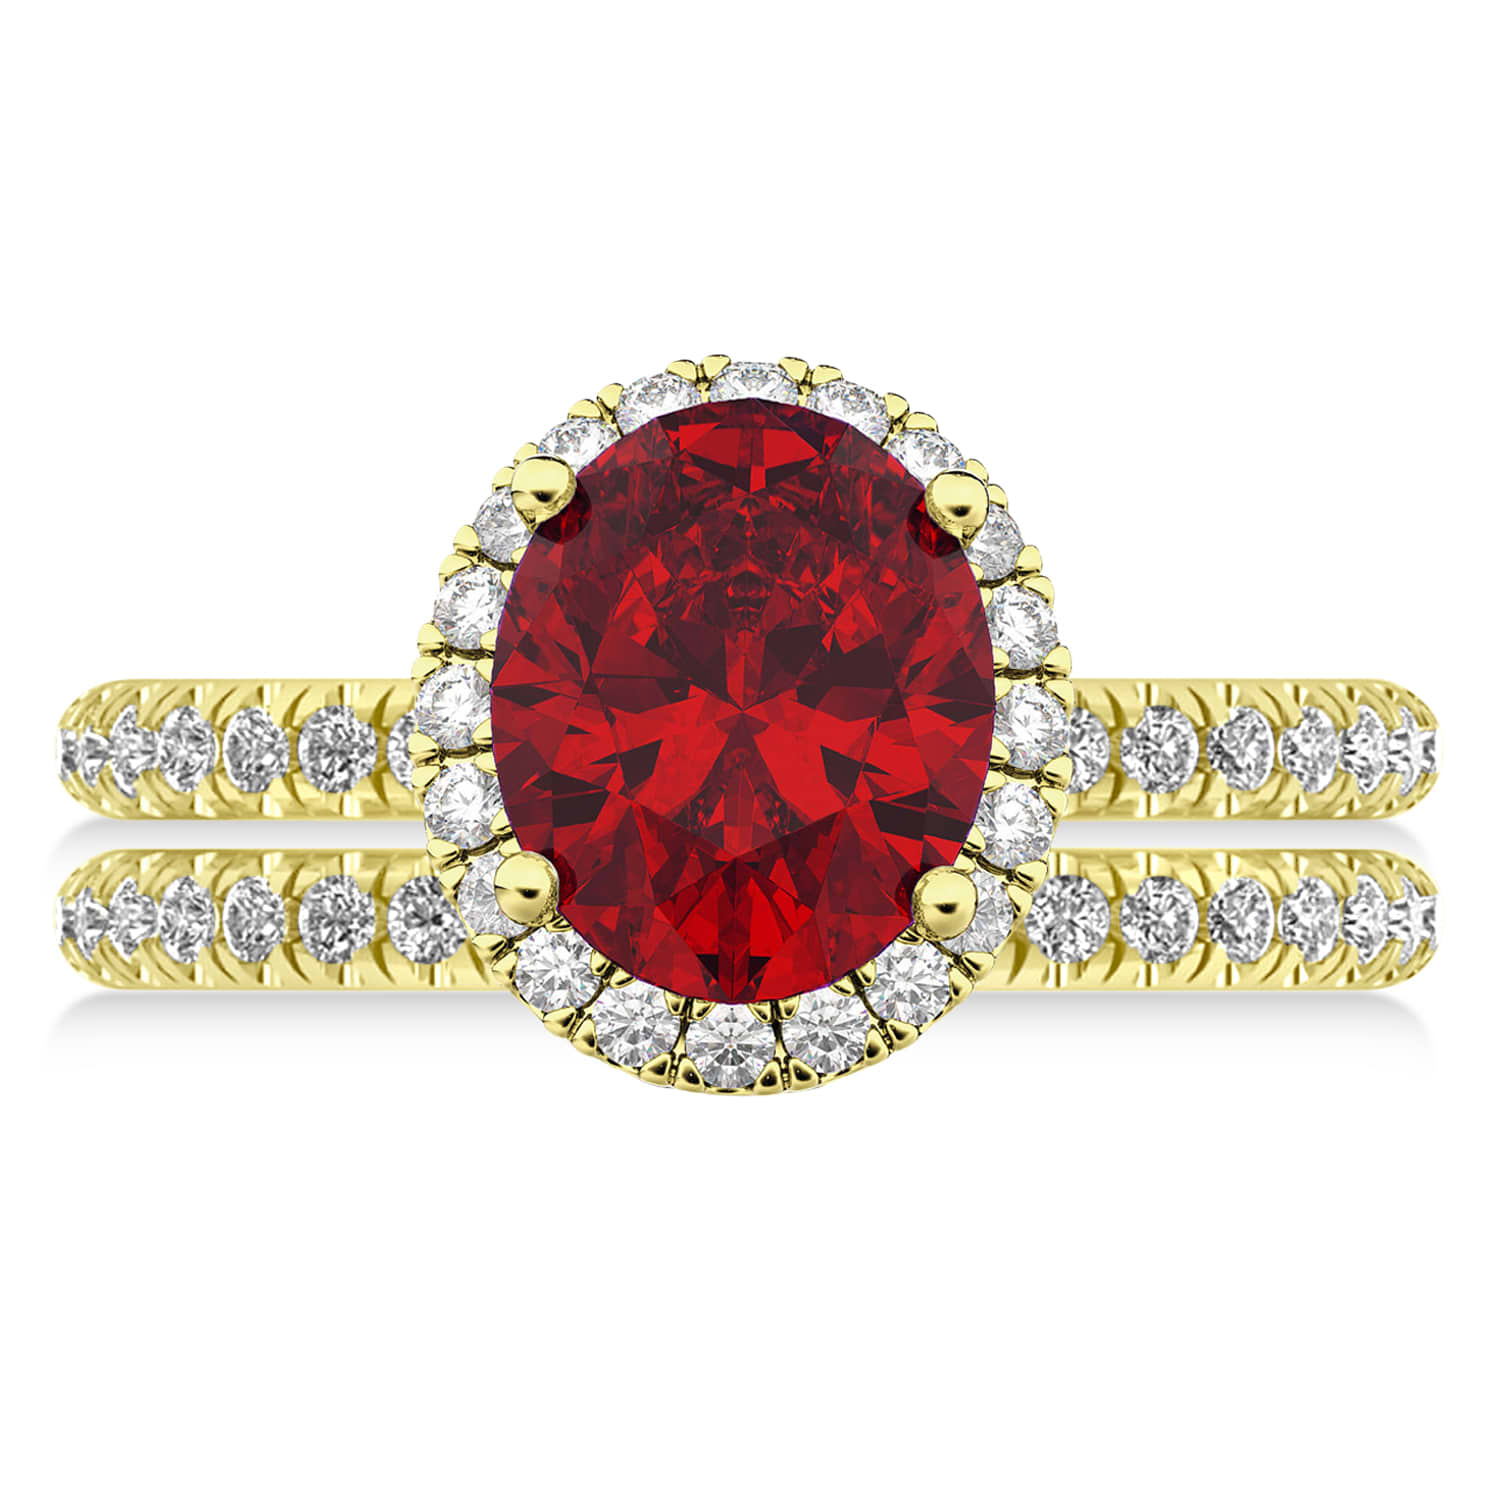 Ruby & Diamonds Oval-Cut Halo Bridal Set 14K Yellow Gold (3.93ct)